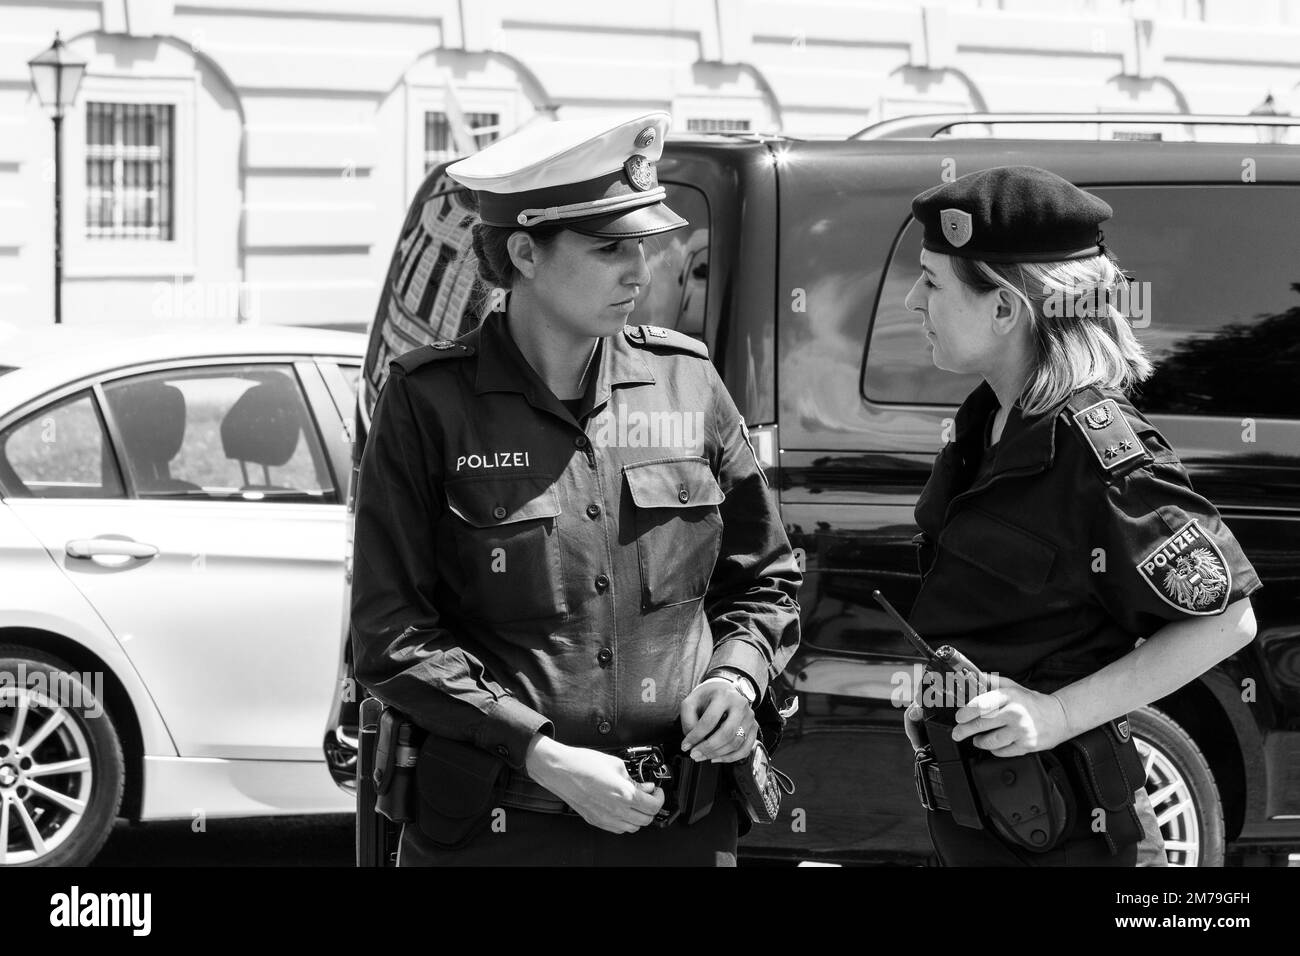 Personale di sicurezza in servizio a Vienna per la visita in città di Vladimir Putin, polizia, militari e servizio segreto di pattuglia Foto Stock